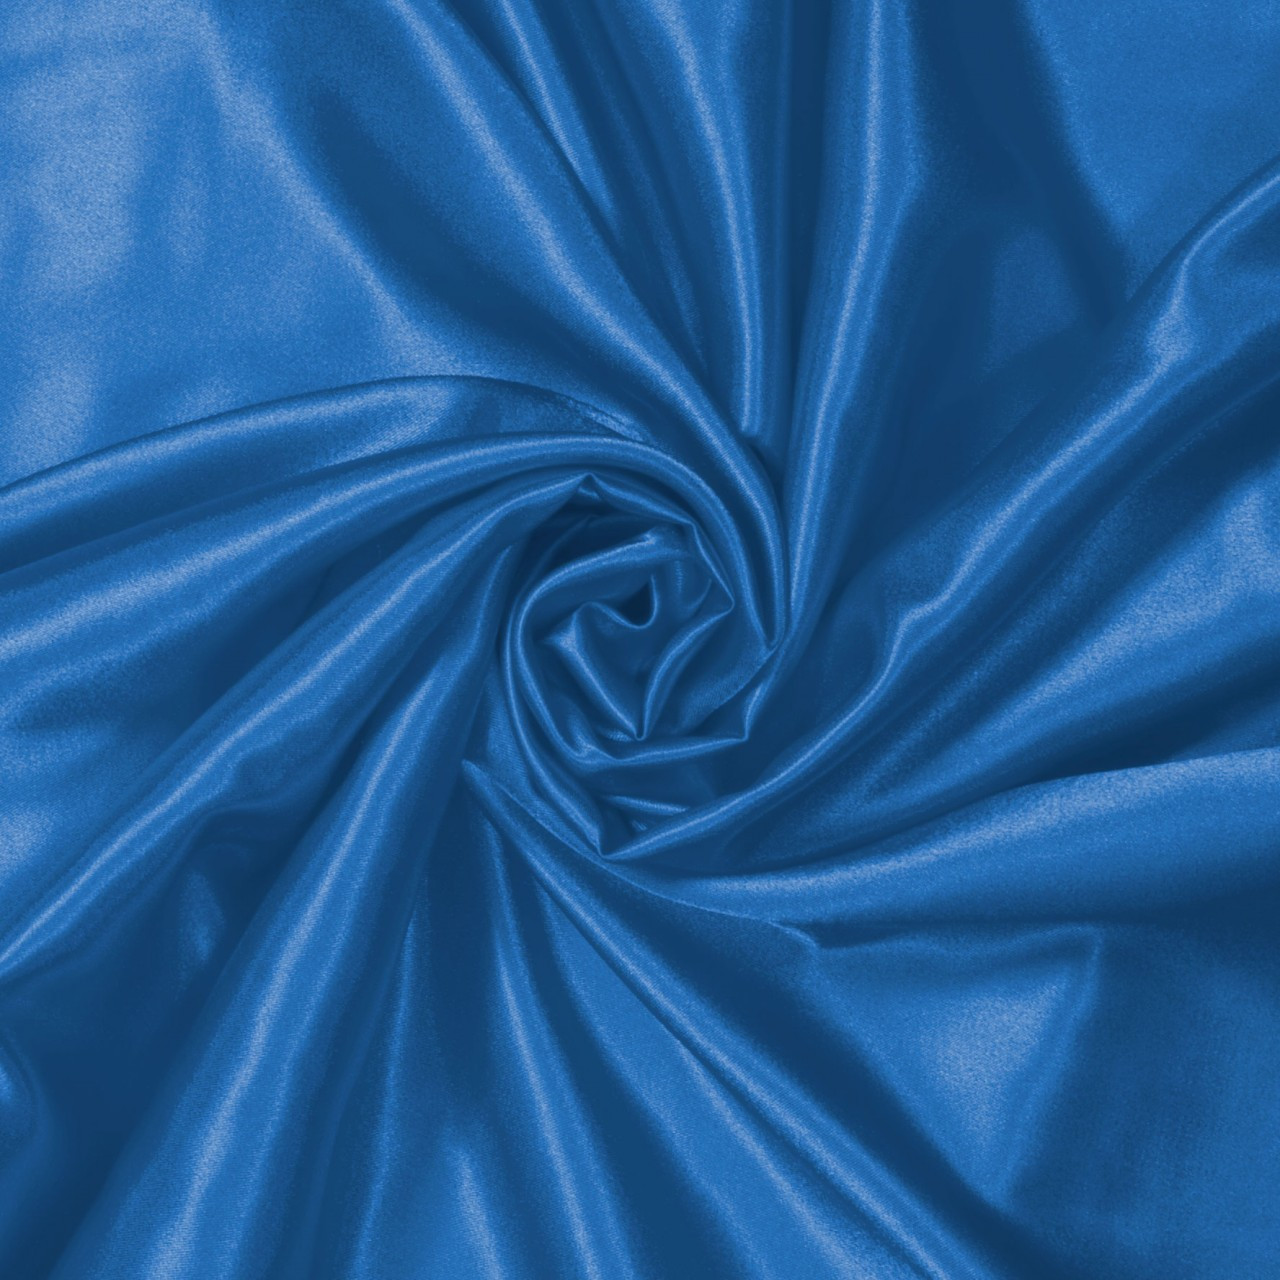 Aquamarine Blue Satin Fabric